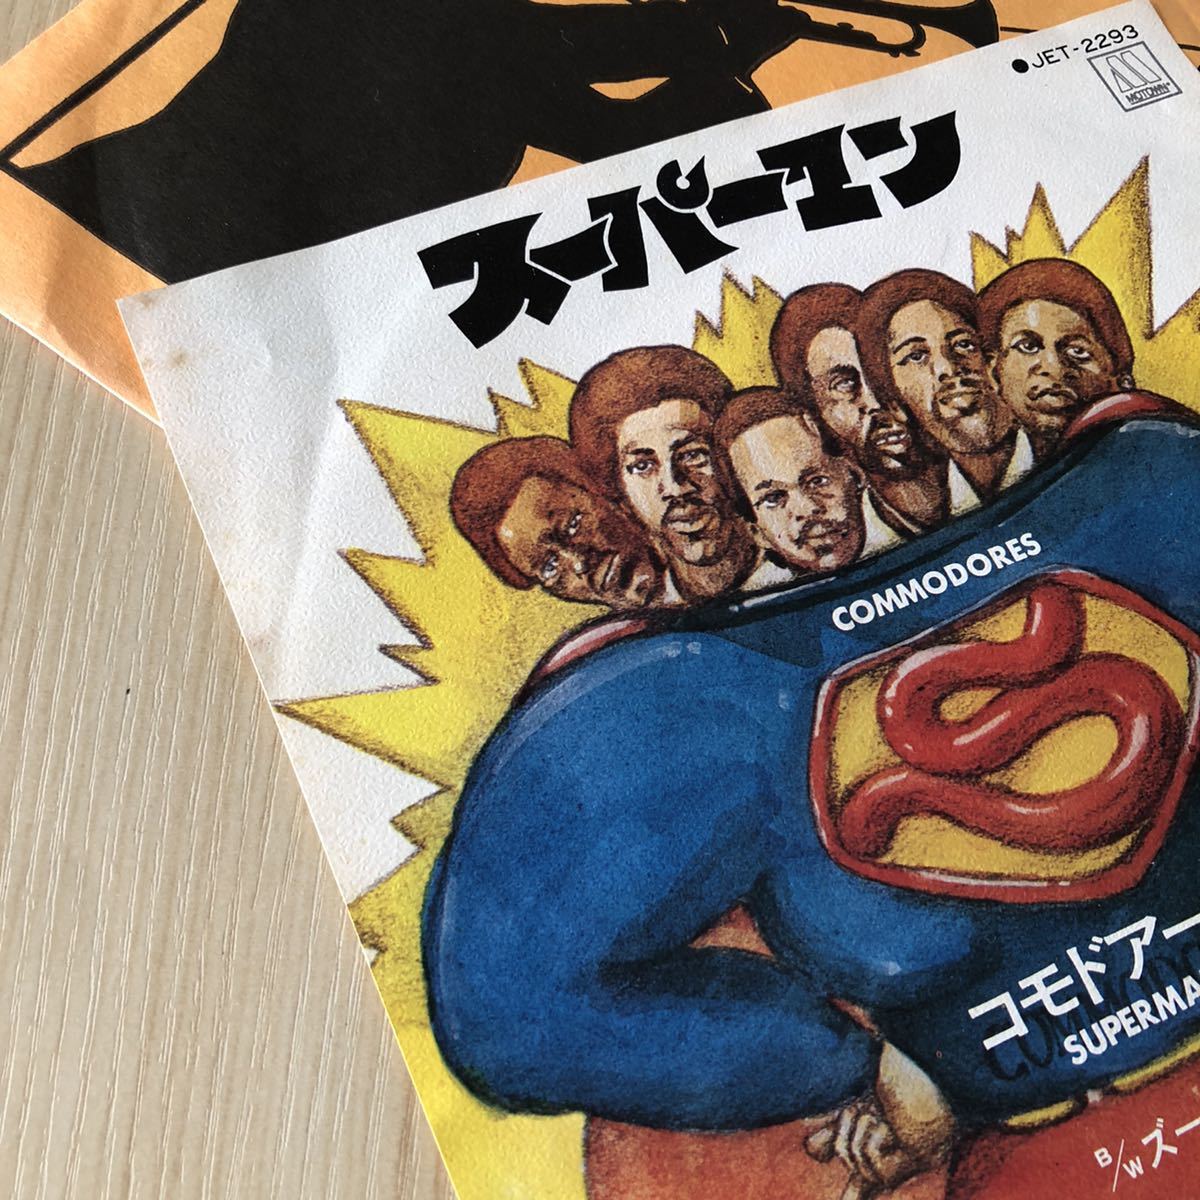 【国内盤7inch】コモドアーズ スーパーマン COMMODORES SUPERMAN THE ZOO / EP レコード / JET2293 / 洋楽ディスコクラブ /_画像4